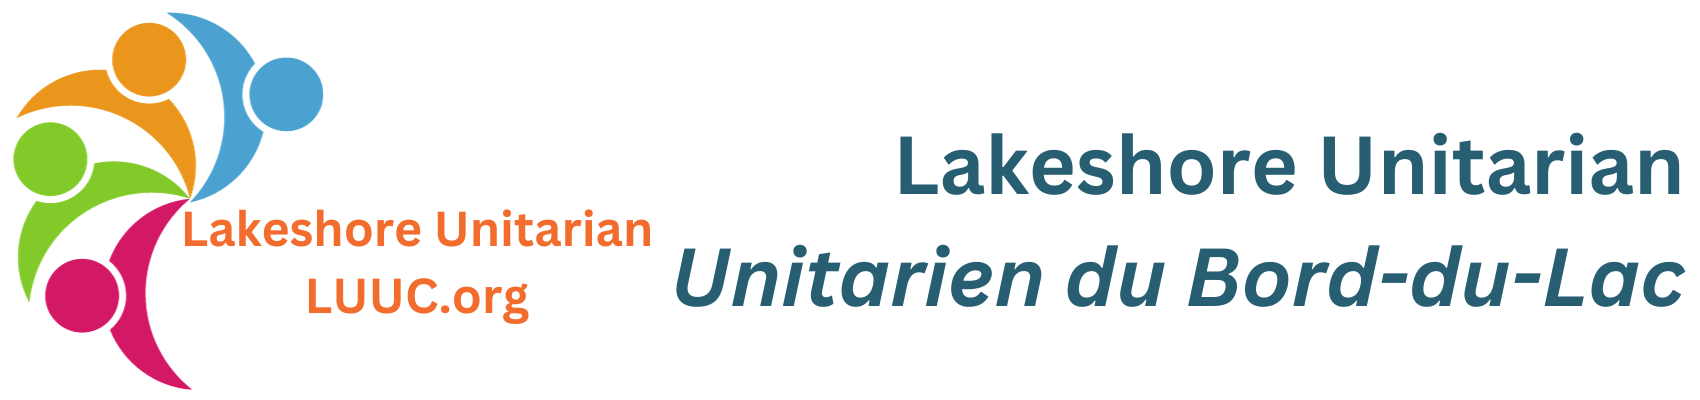 Lakeshore Unitarian